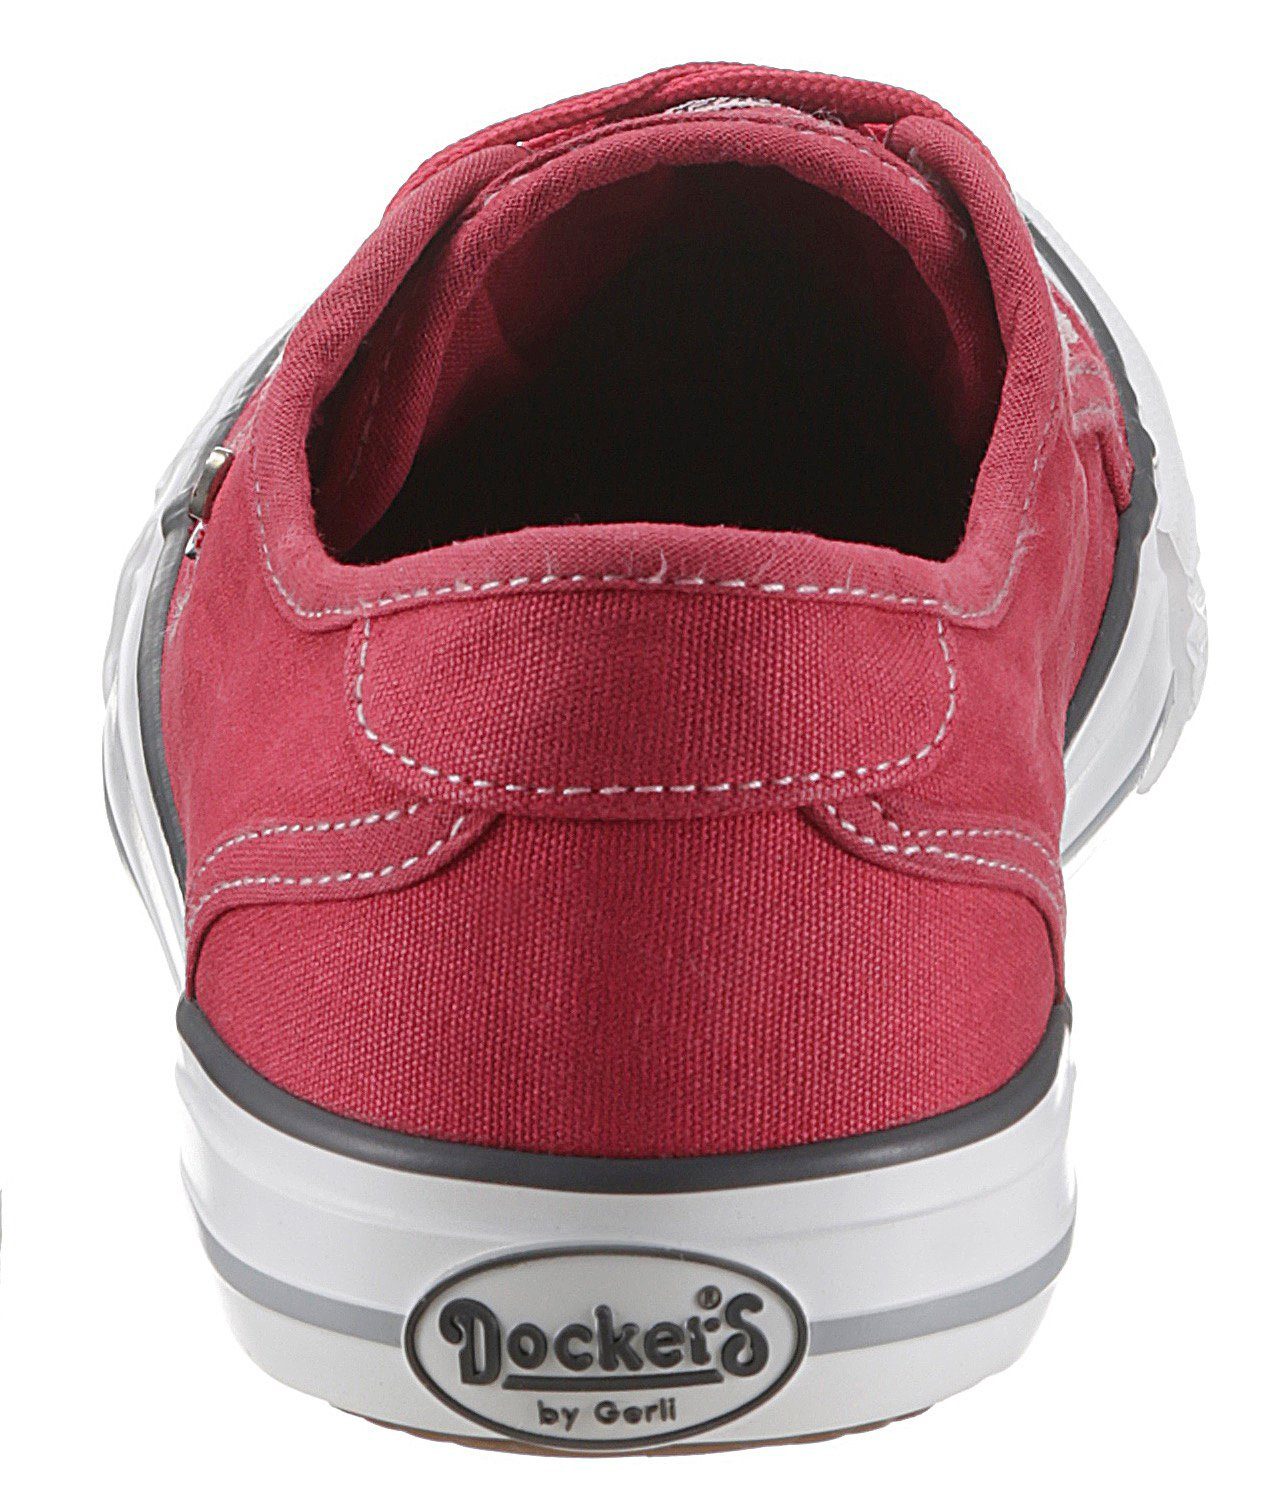 Slip-On by Dockers Sneaker rot Logoschriftzug Gerli mit